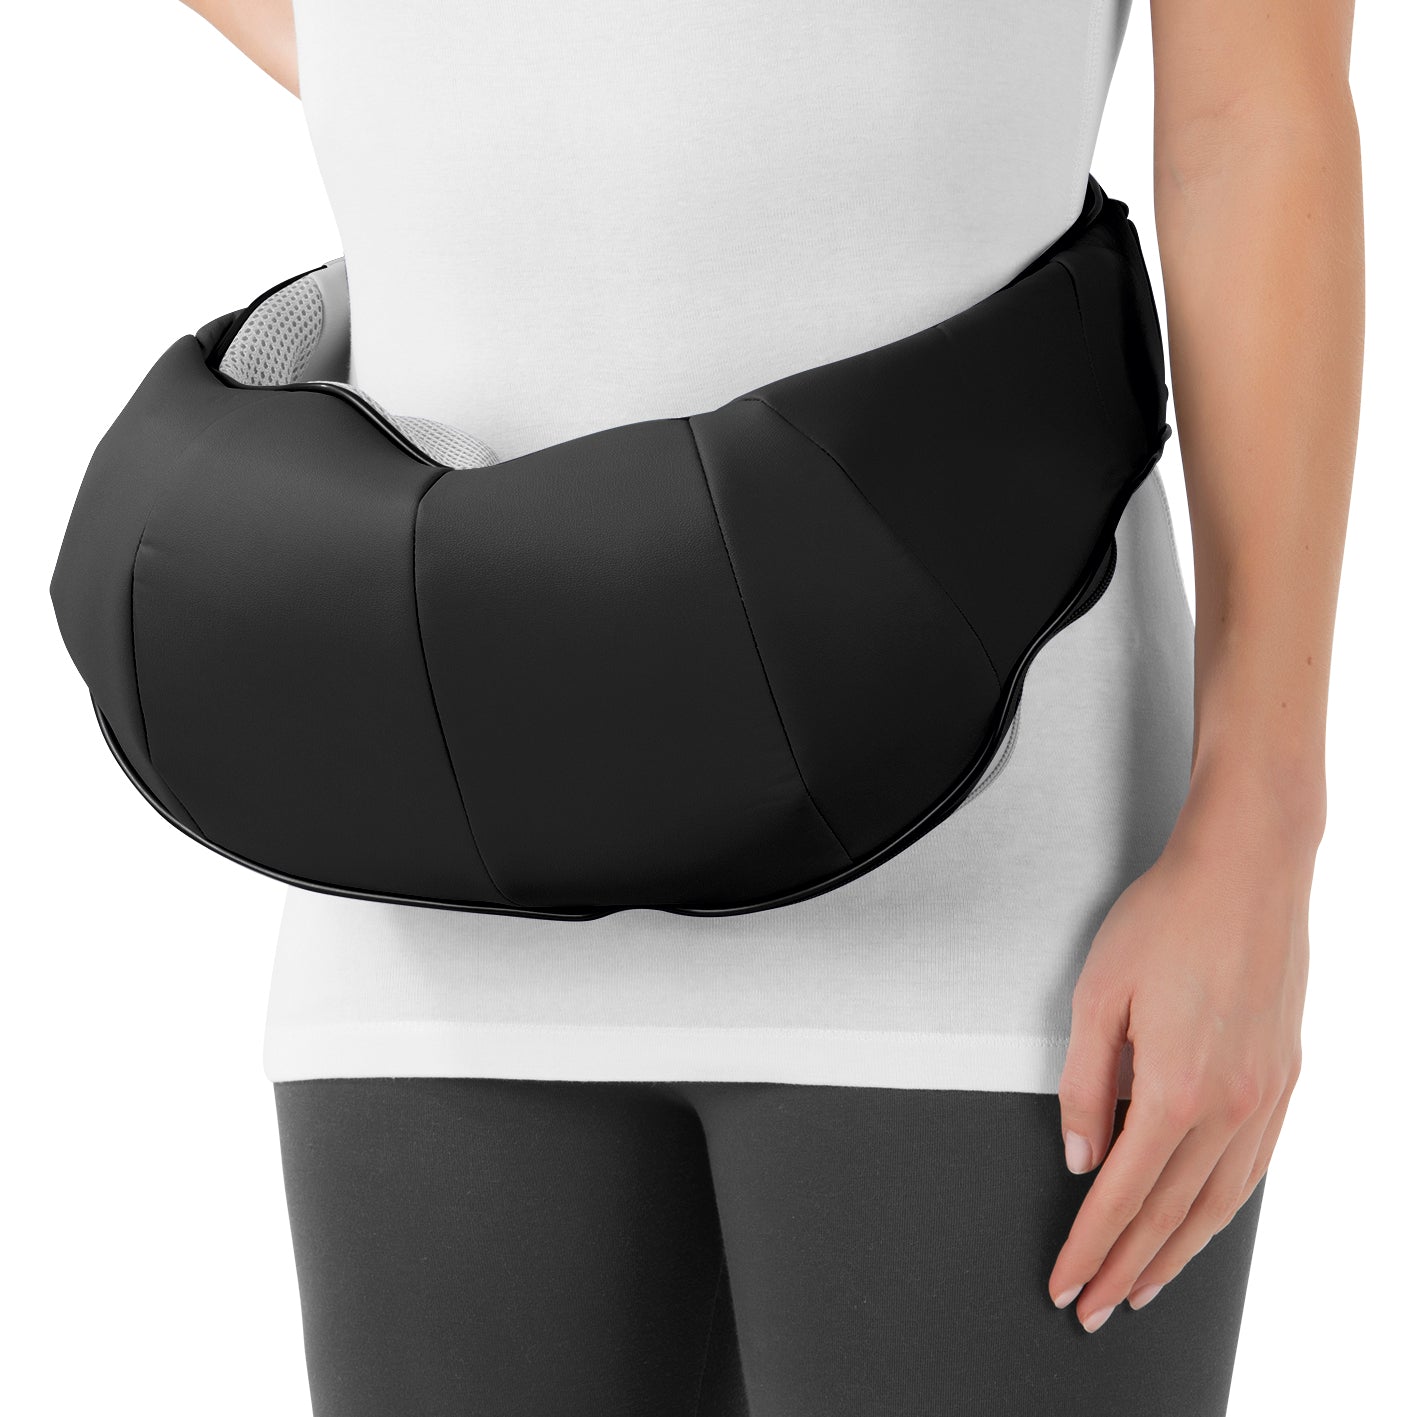 Shiatsu-Massagegerät für Nacken & Schulter - grau/schwarz